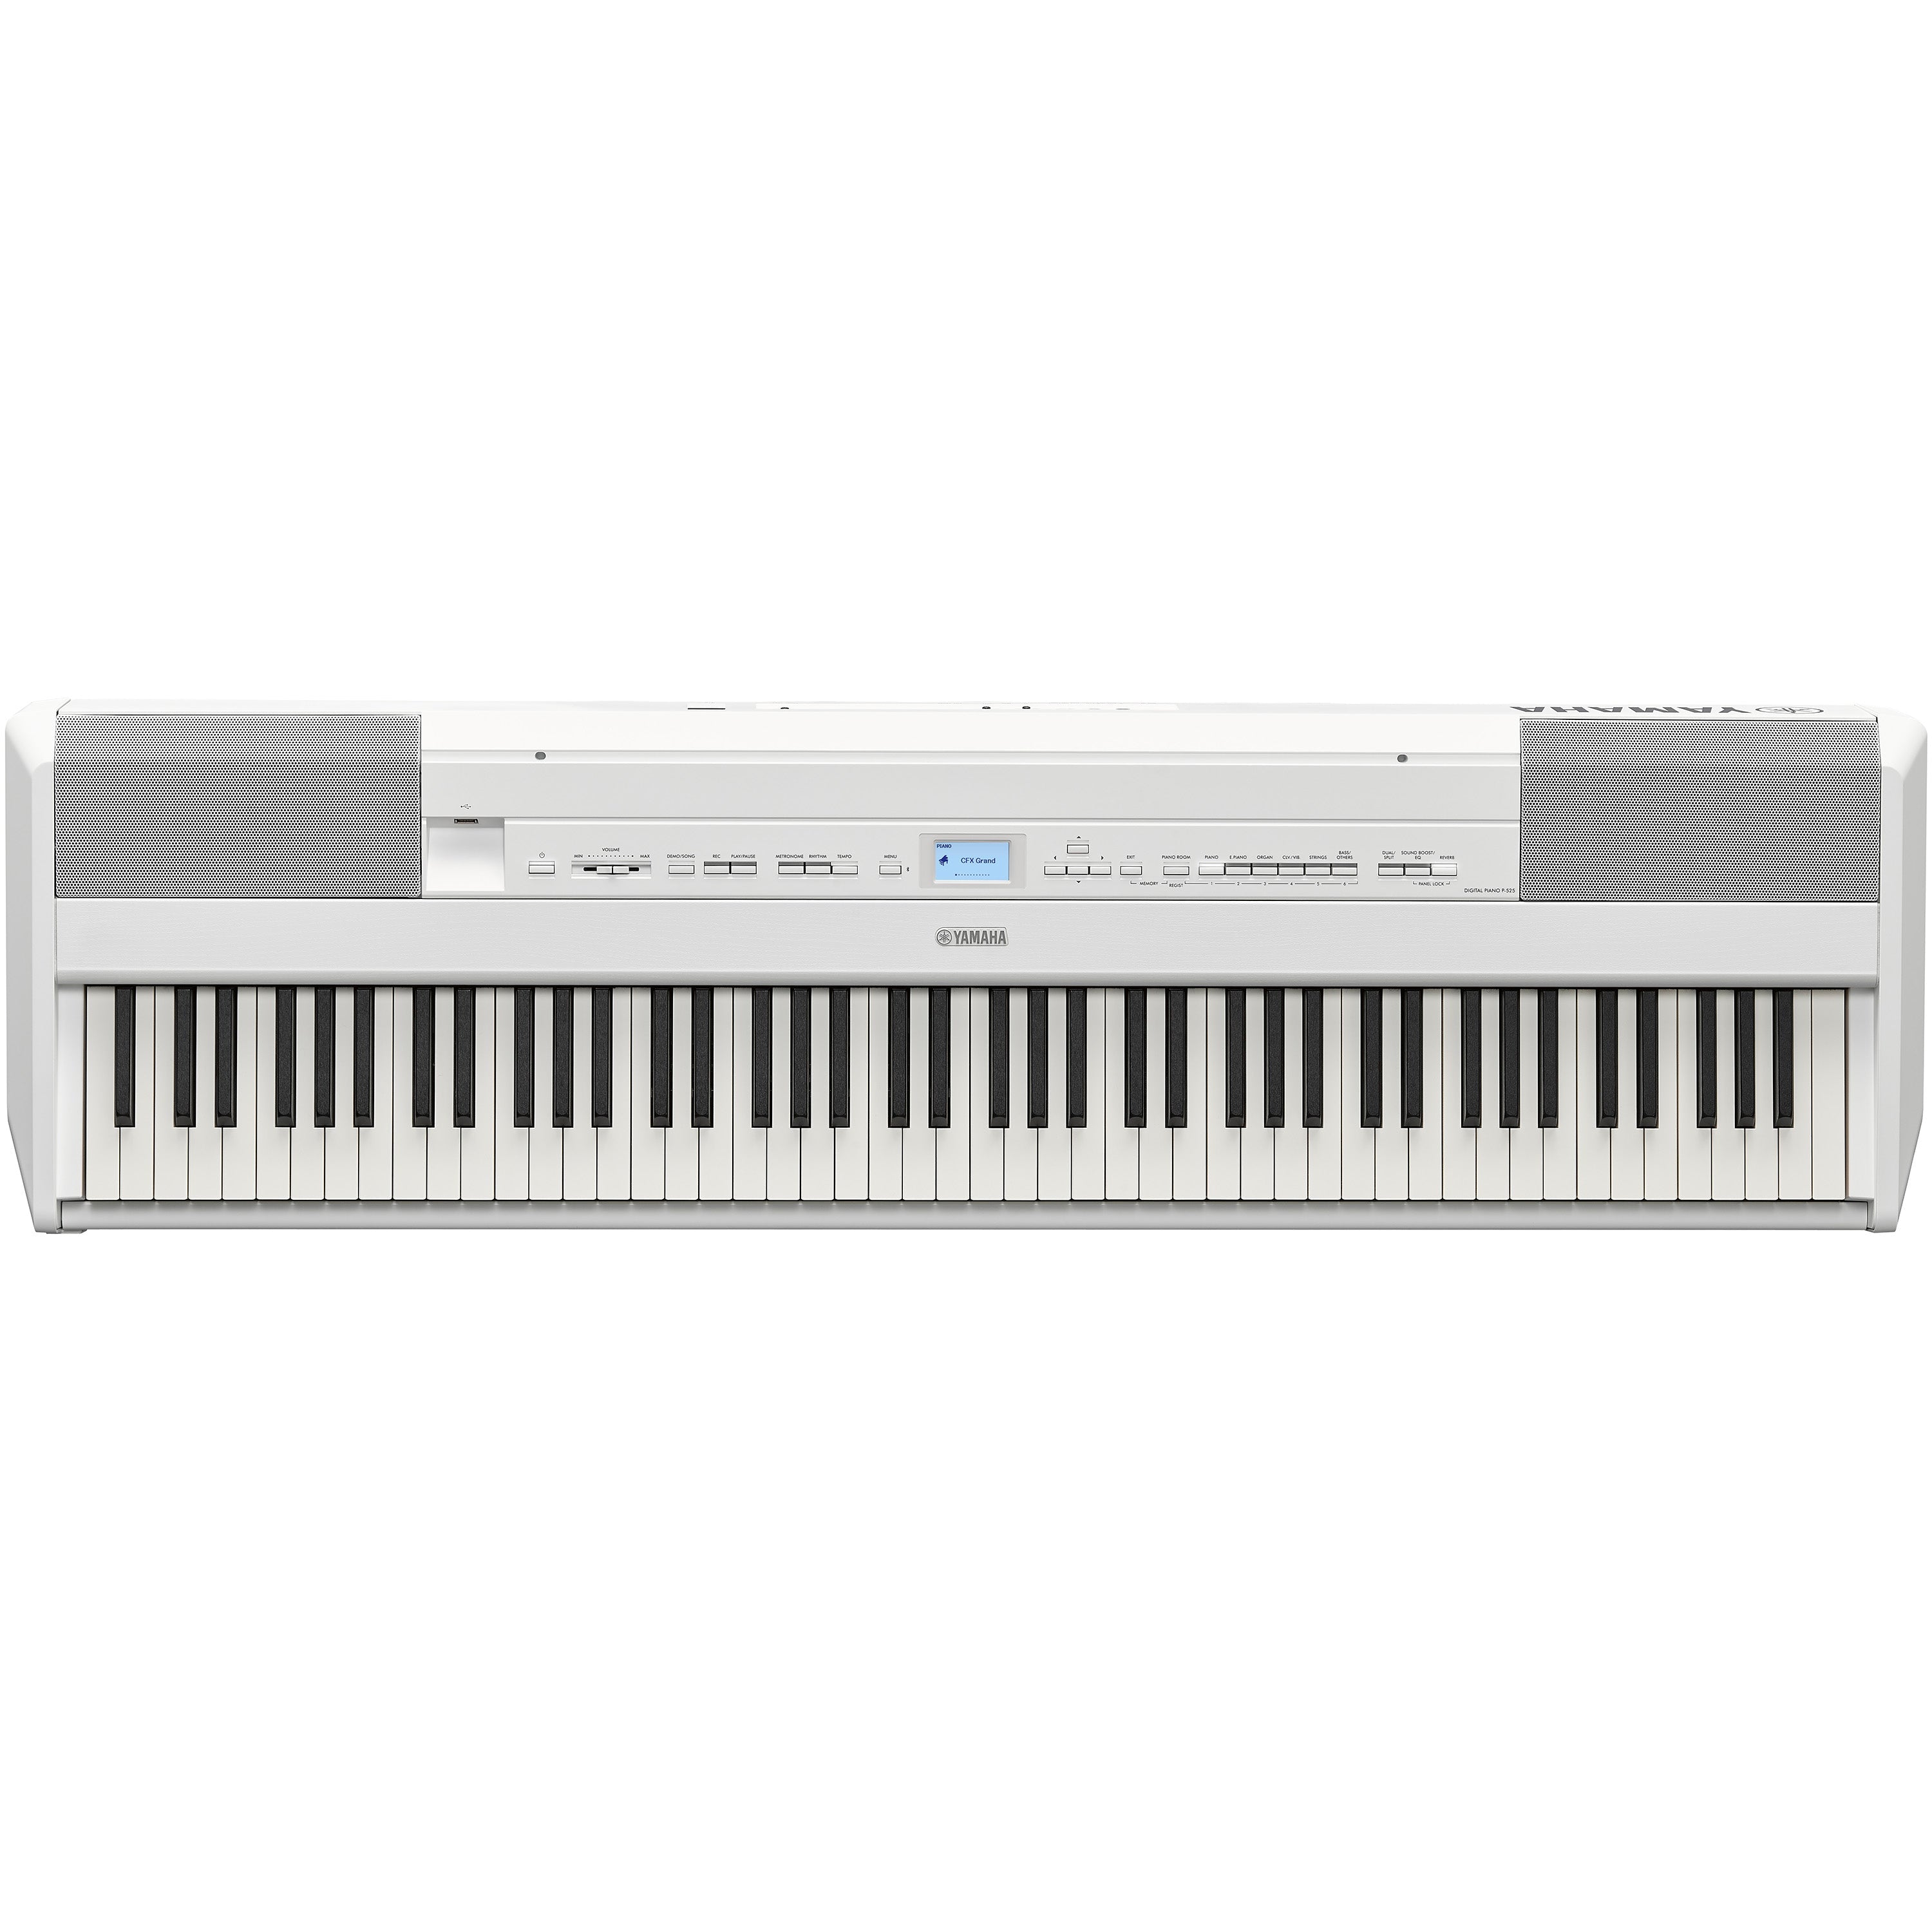 Yamaha P-525 Digital Piano - White, View 3